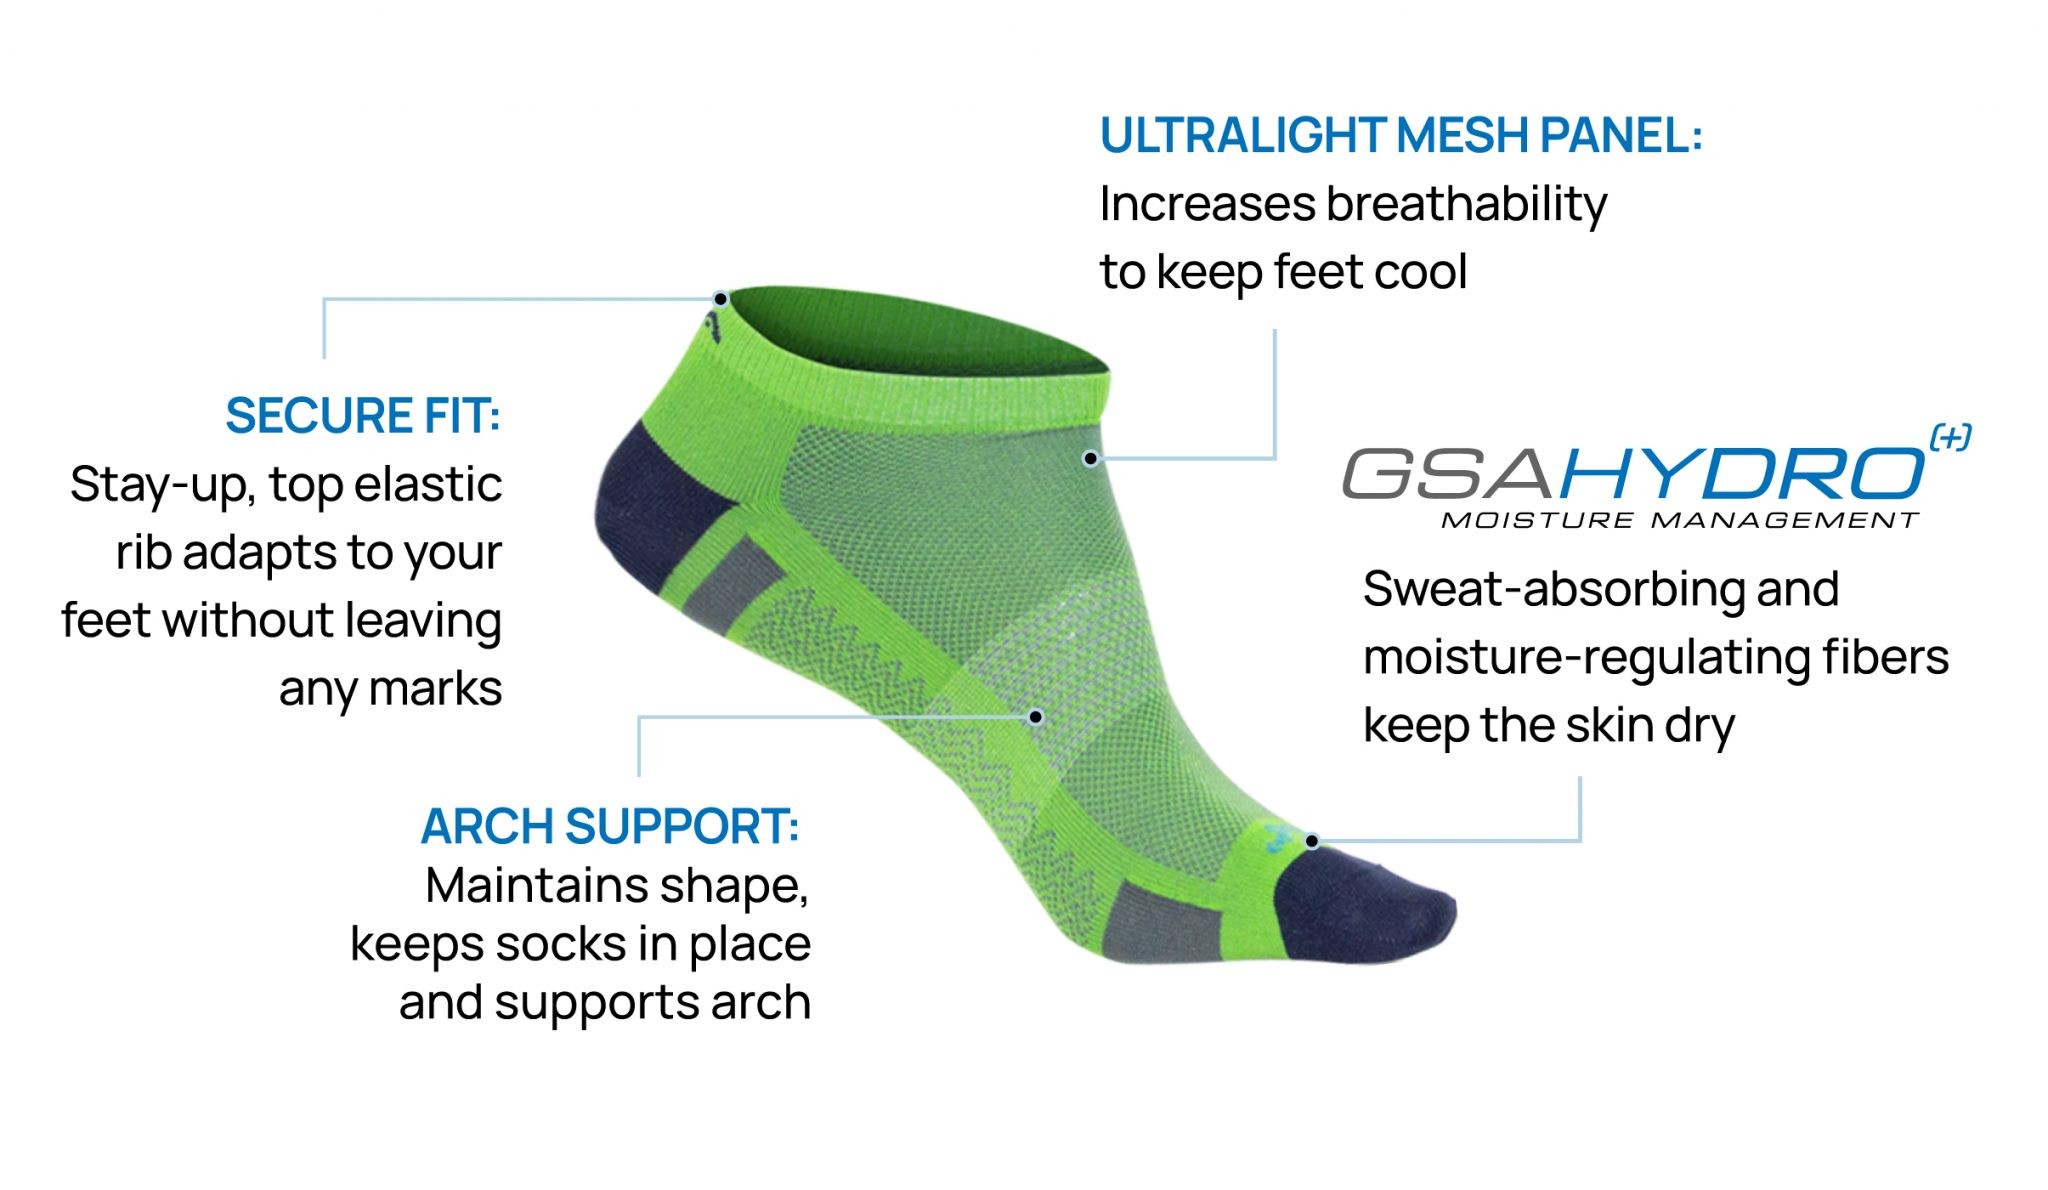 Ανδρικές Κάλτσες - GSA 620 Performance Socks Πακέτο των 3 - 911448-57 -  Spot Team